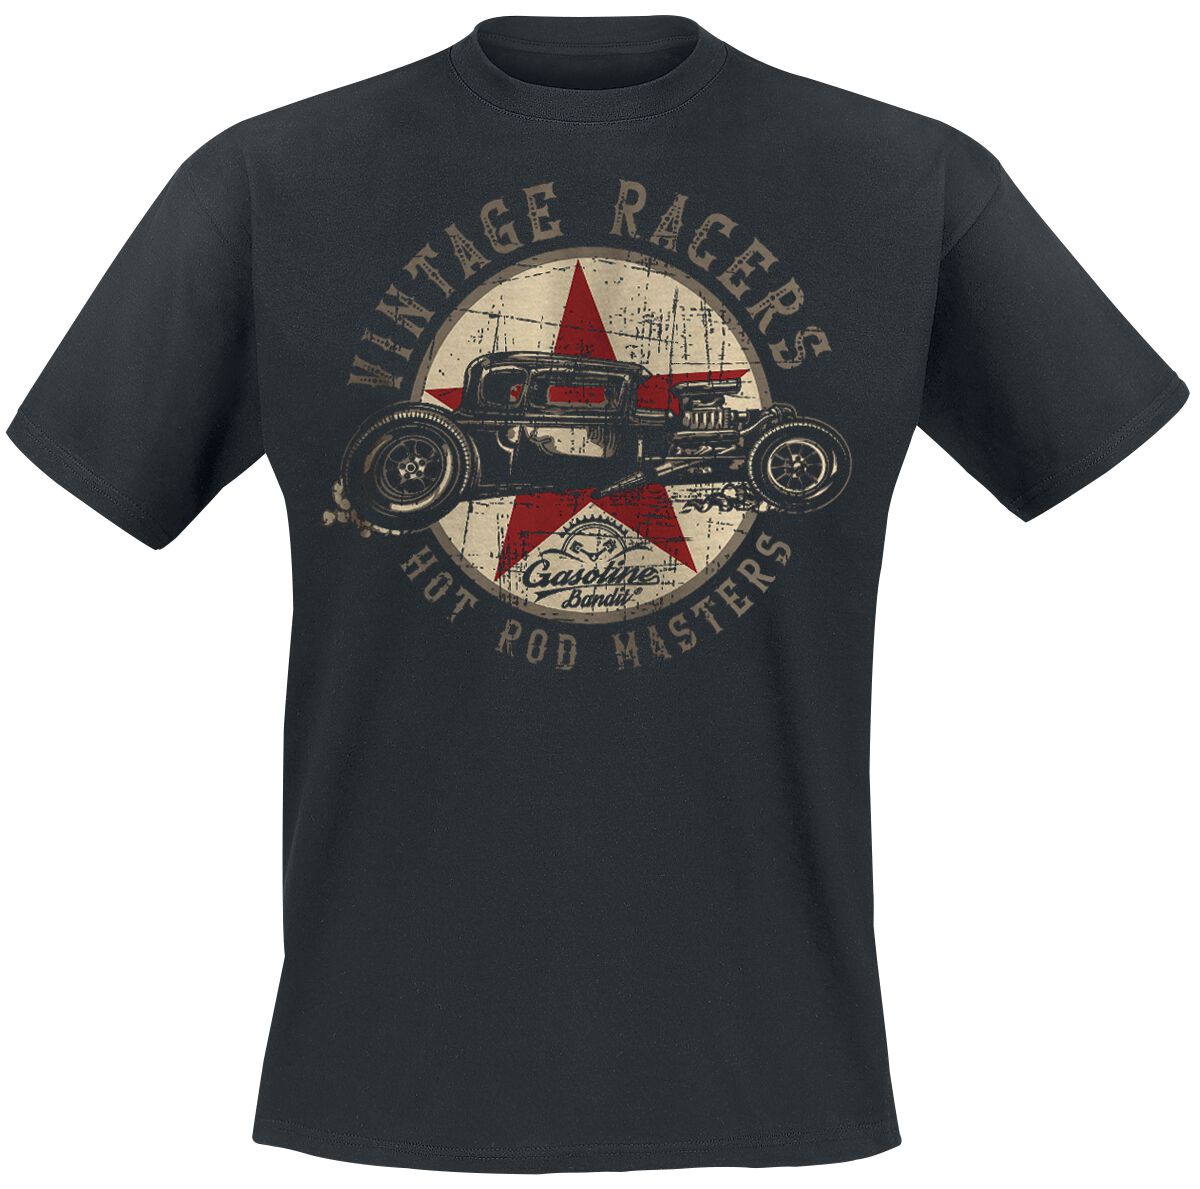 Gasoline Bandit - Rockabilly T-Shirt - Vintage Racers - S bis 3XL - für Männer - Größe 3XL - schwarz